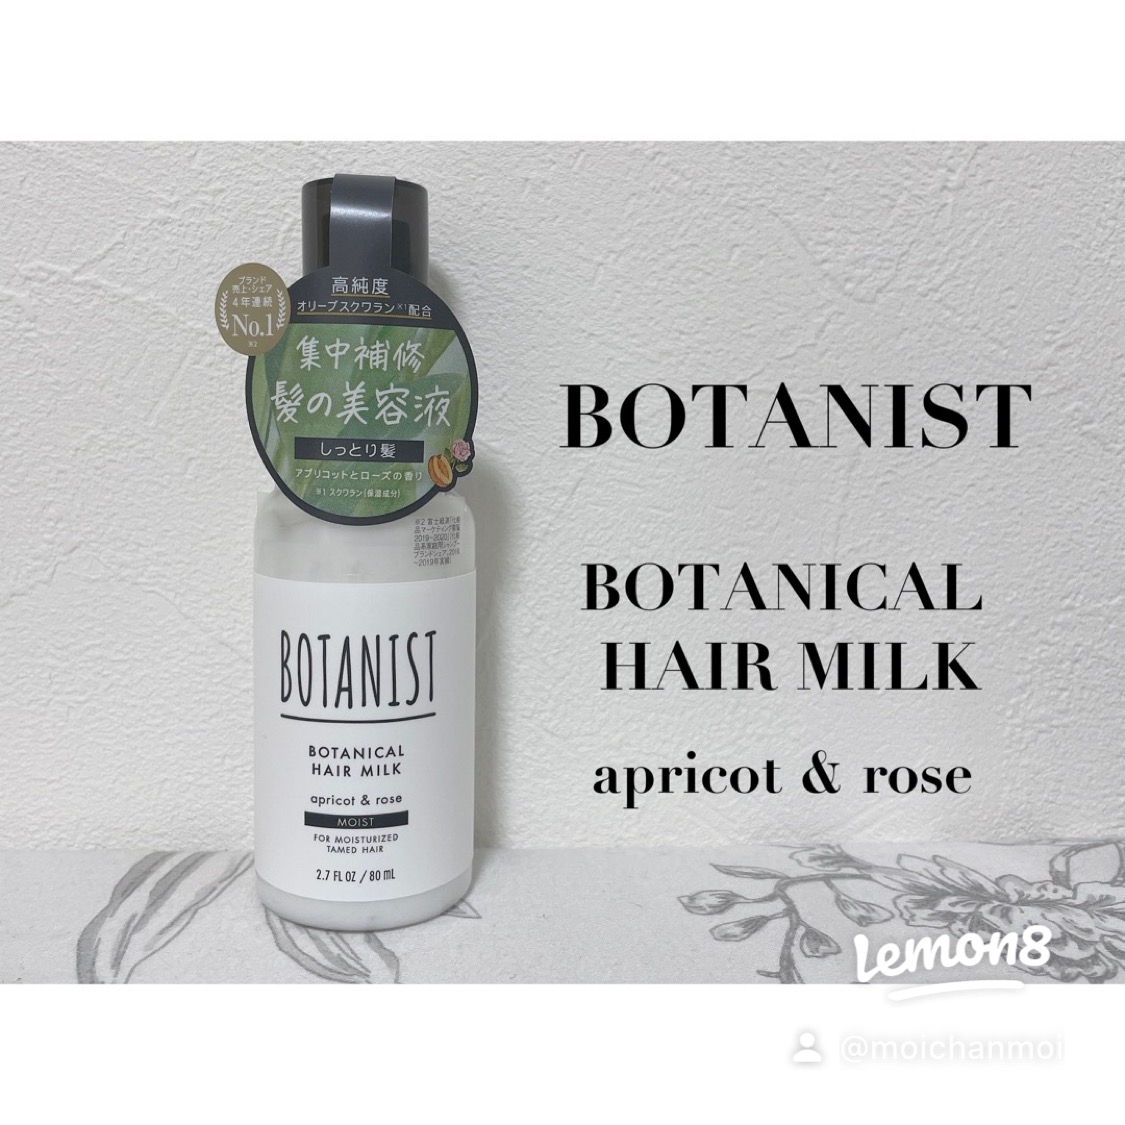 BOTANIST(ボタニスト)ボタニカルヘアミルク モイストを使ったもいさんのクチコミ画像1